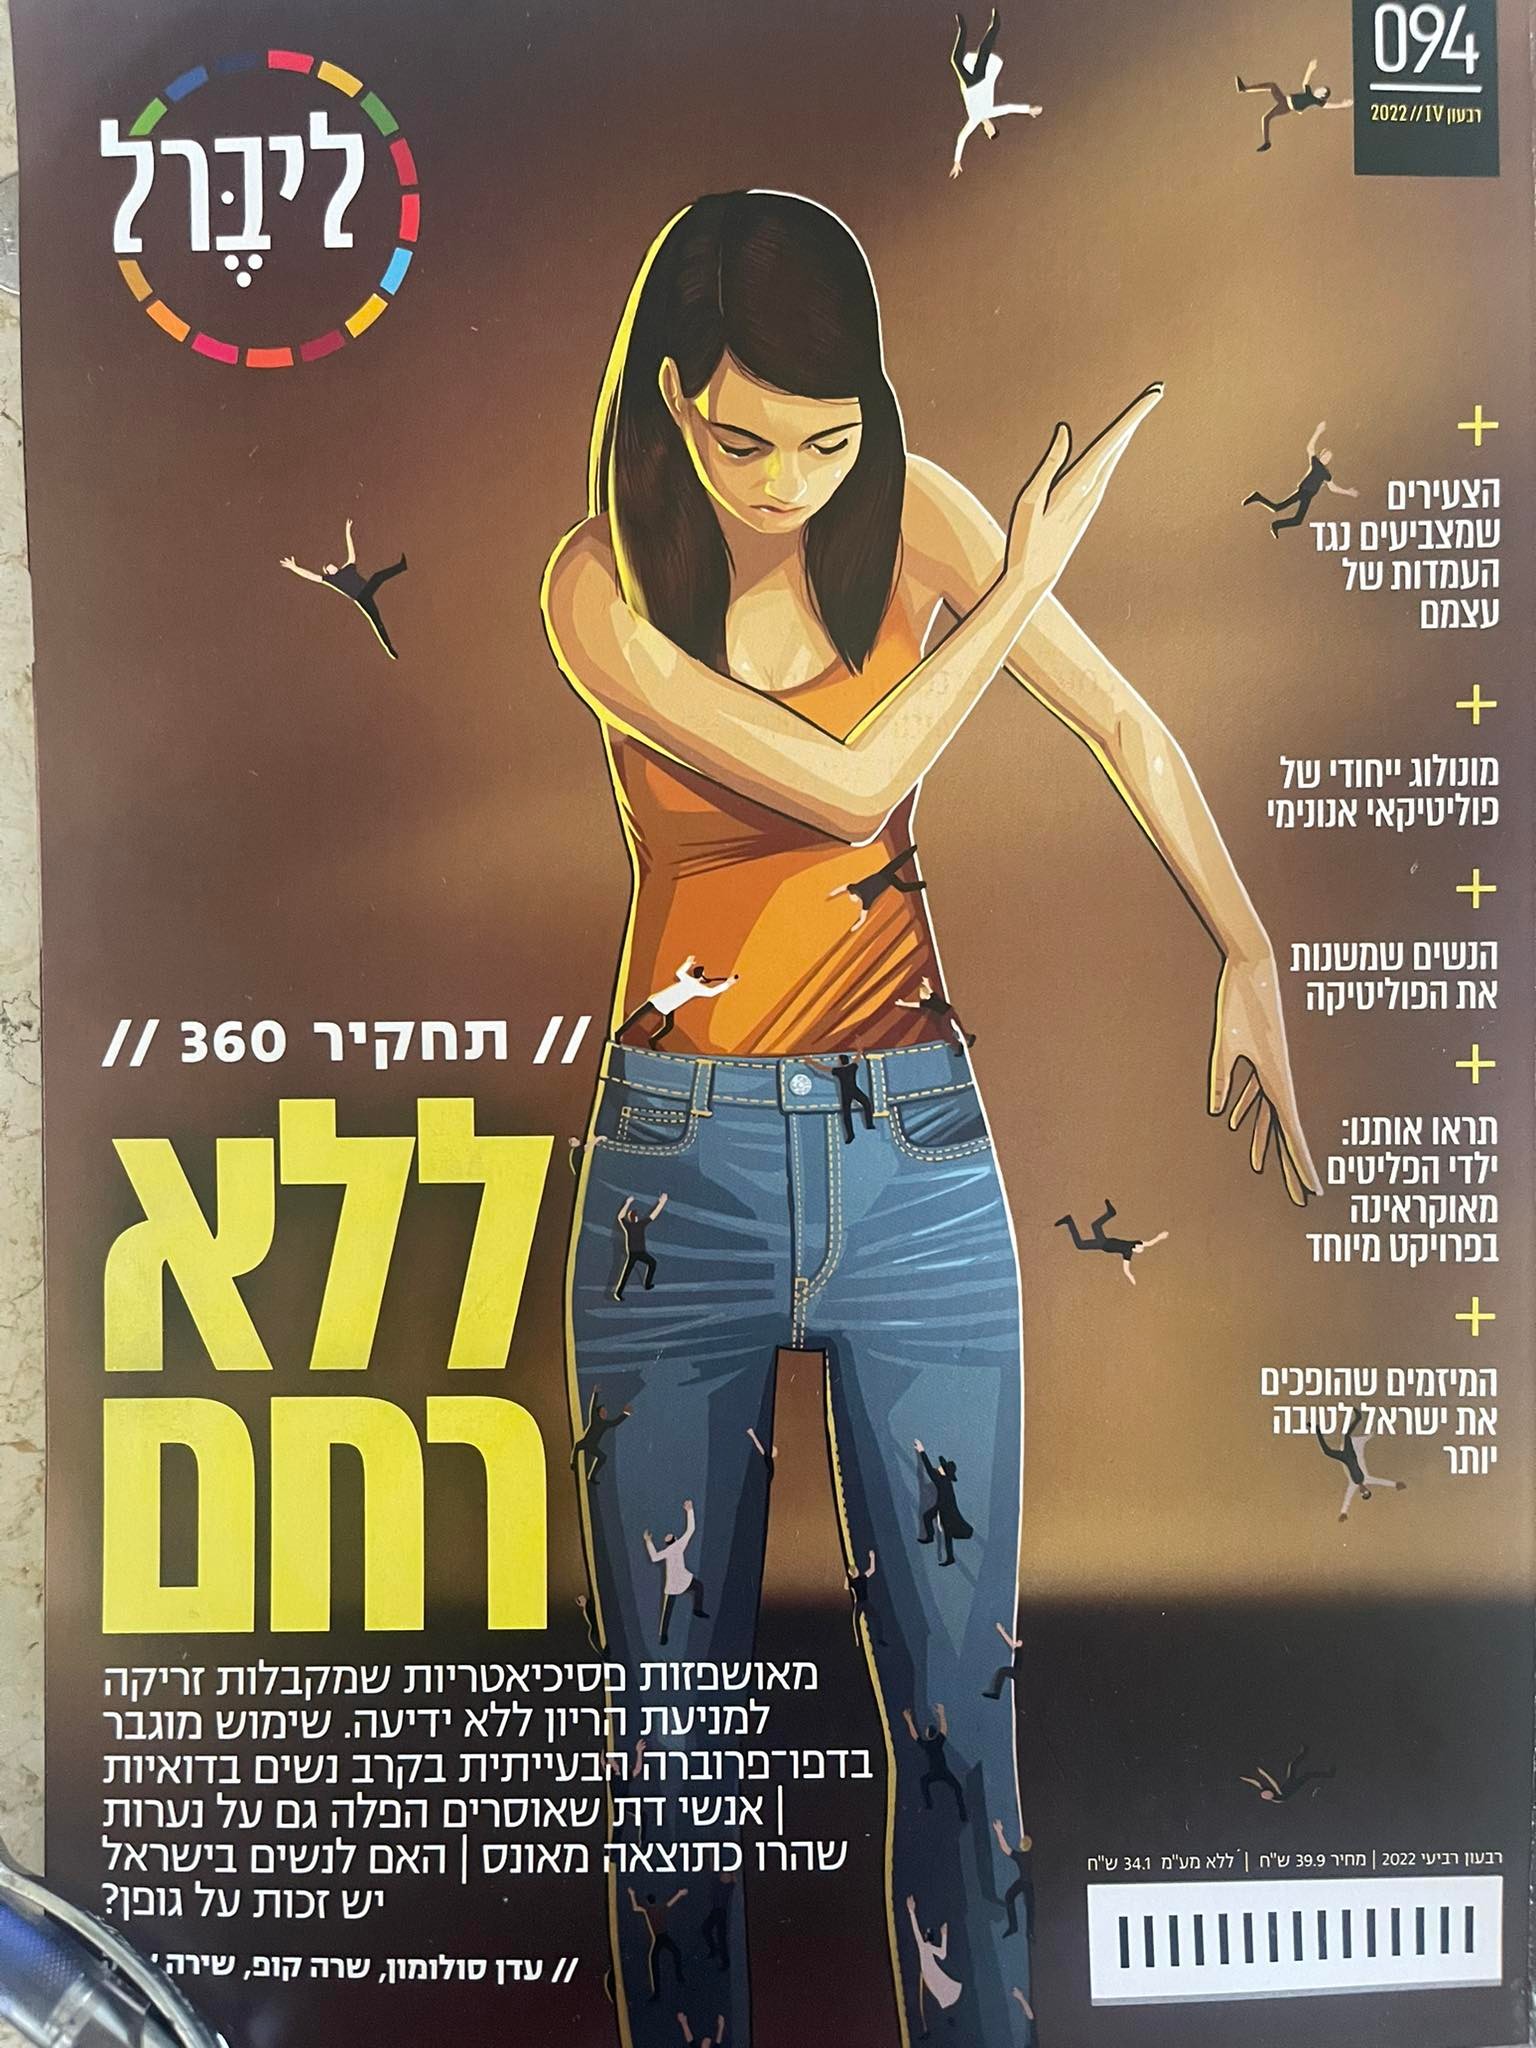 غلاف المجلة العبرية التي نشرت التحقيق 